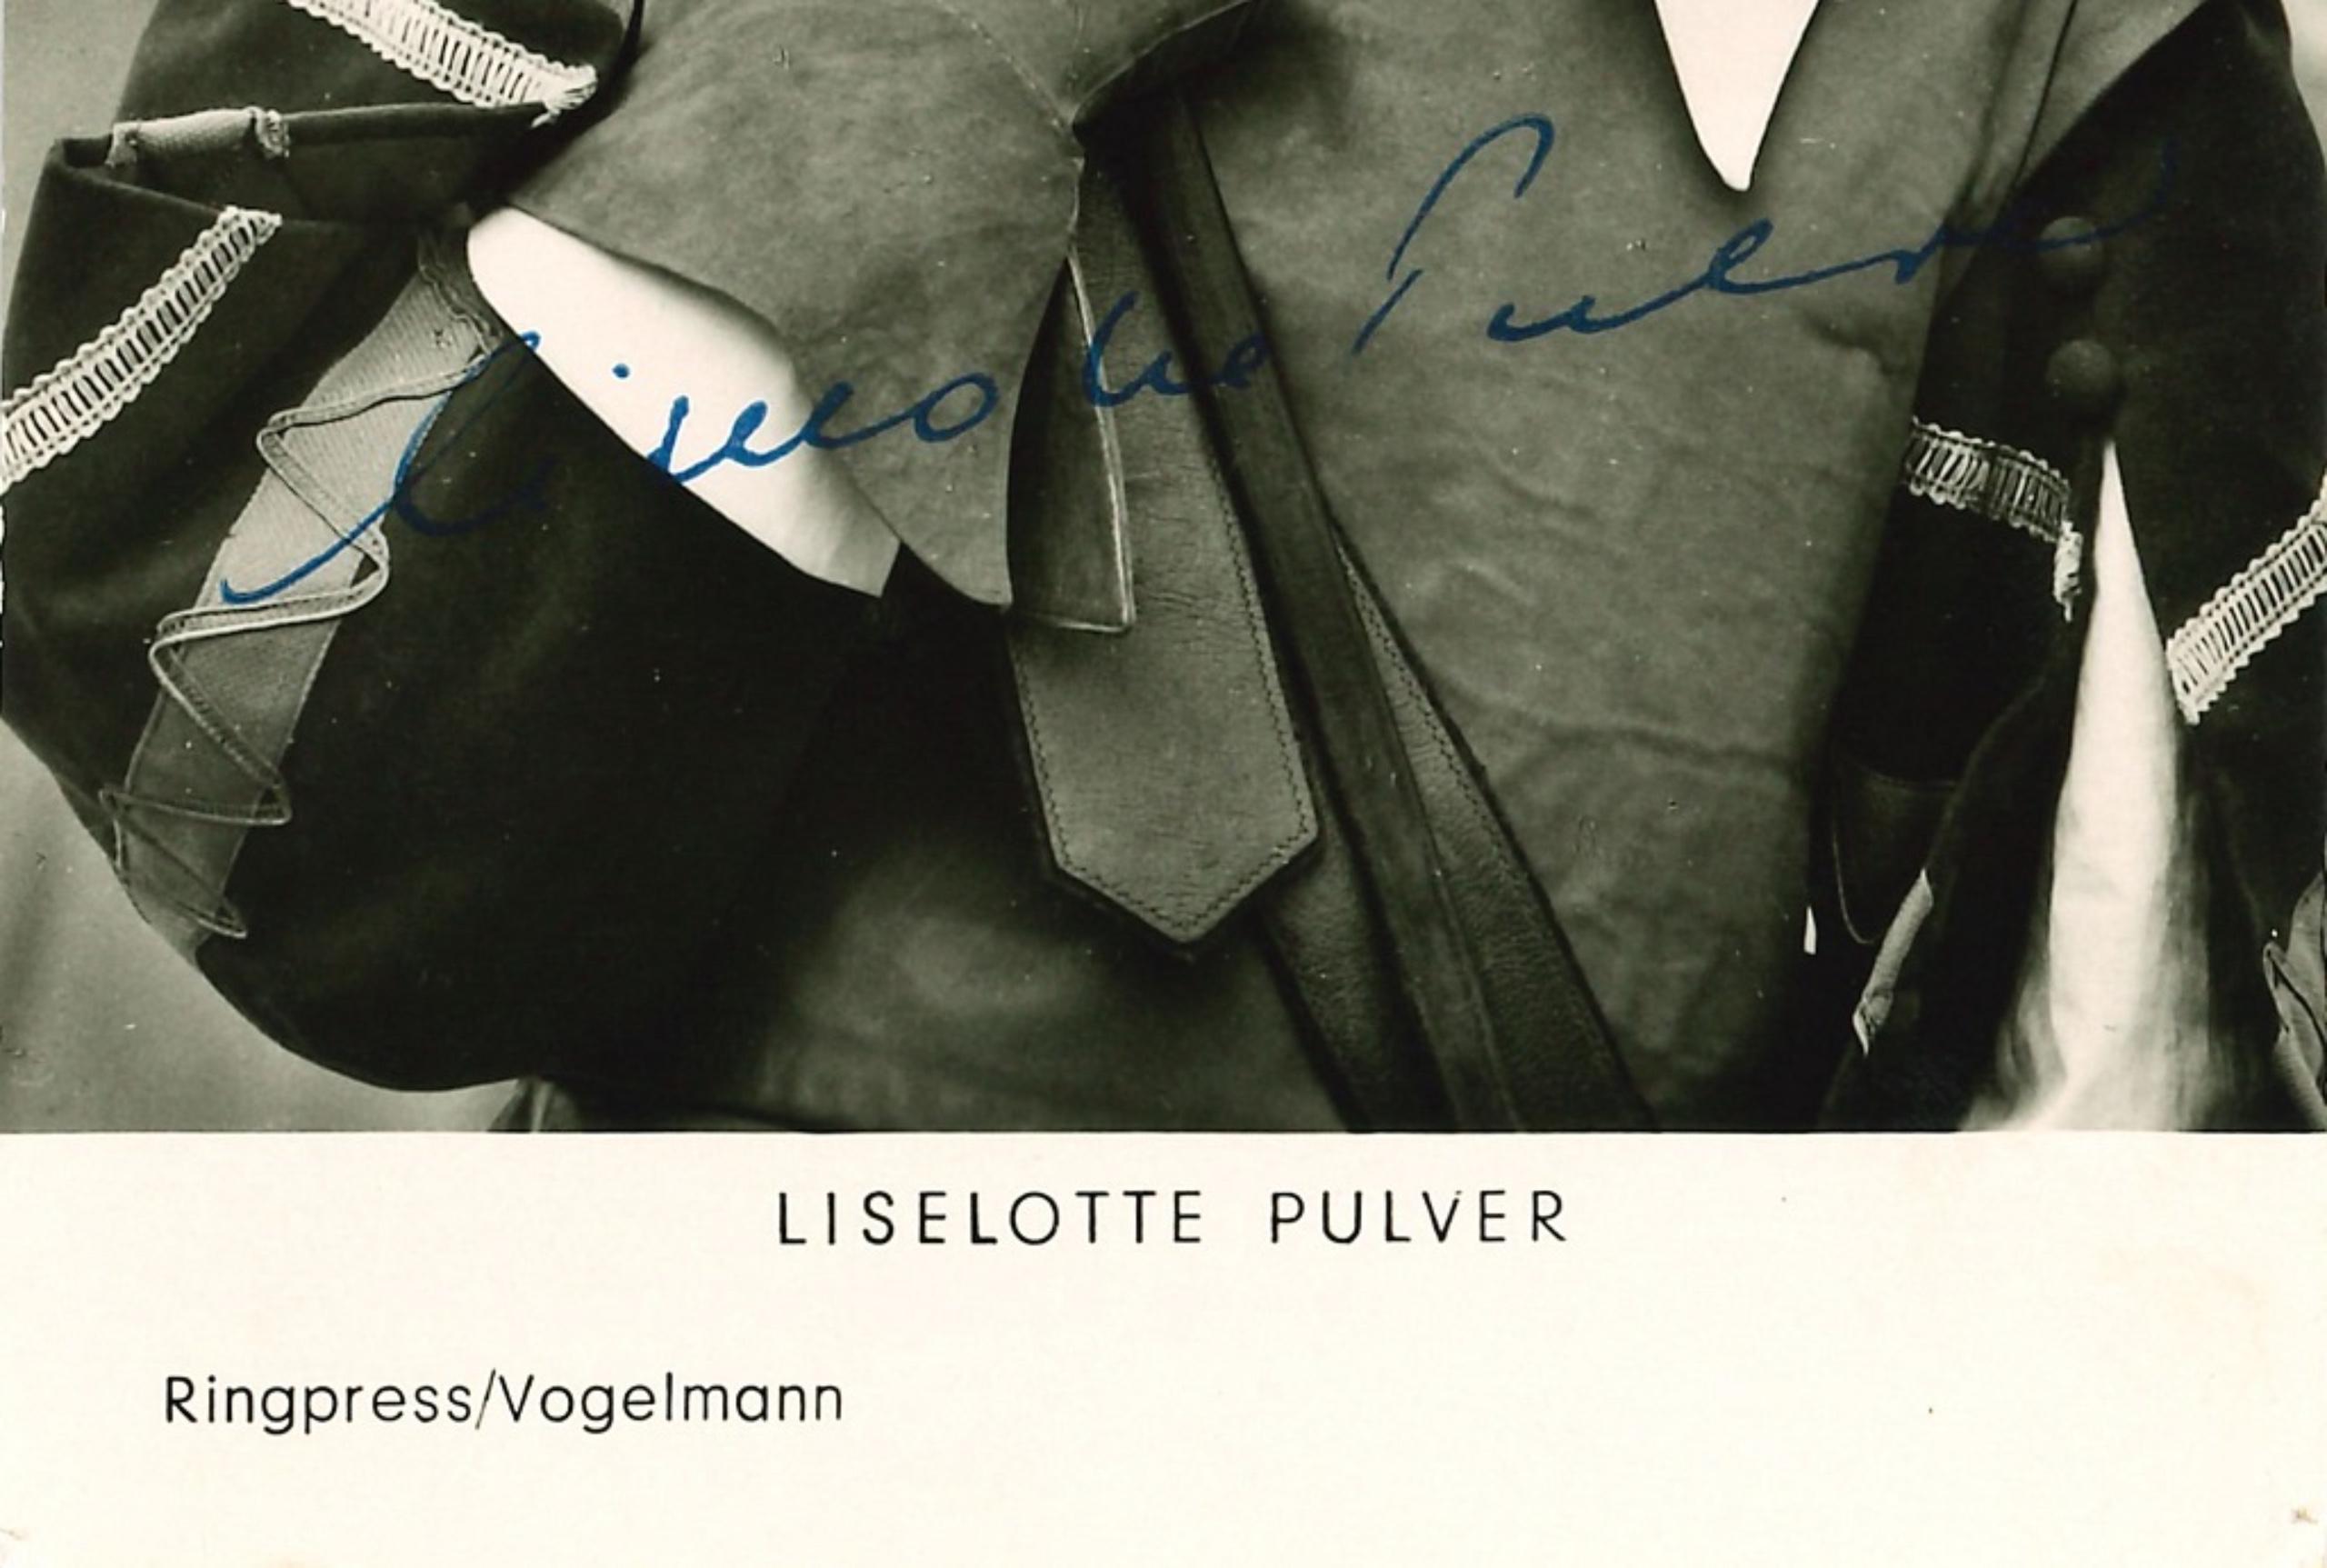 Autographed Portrait of Liselotte Pulver - Original b/w Postcard - 1960s - Photograph by Unknown